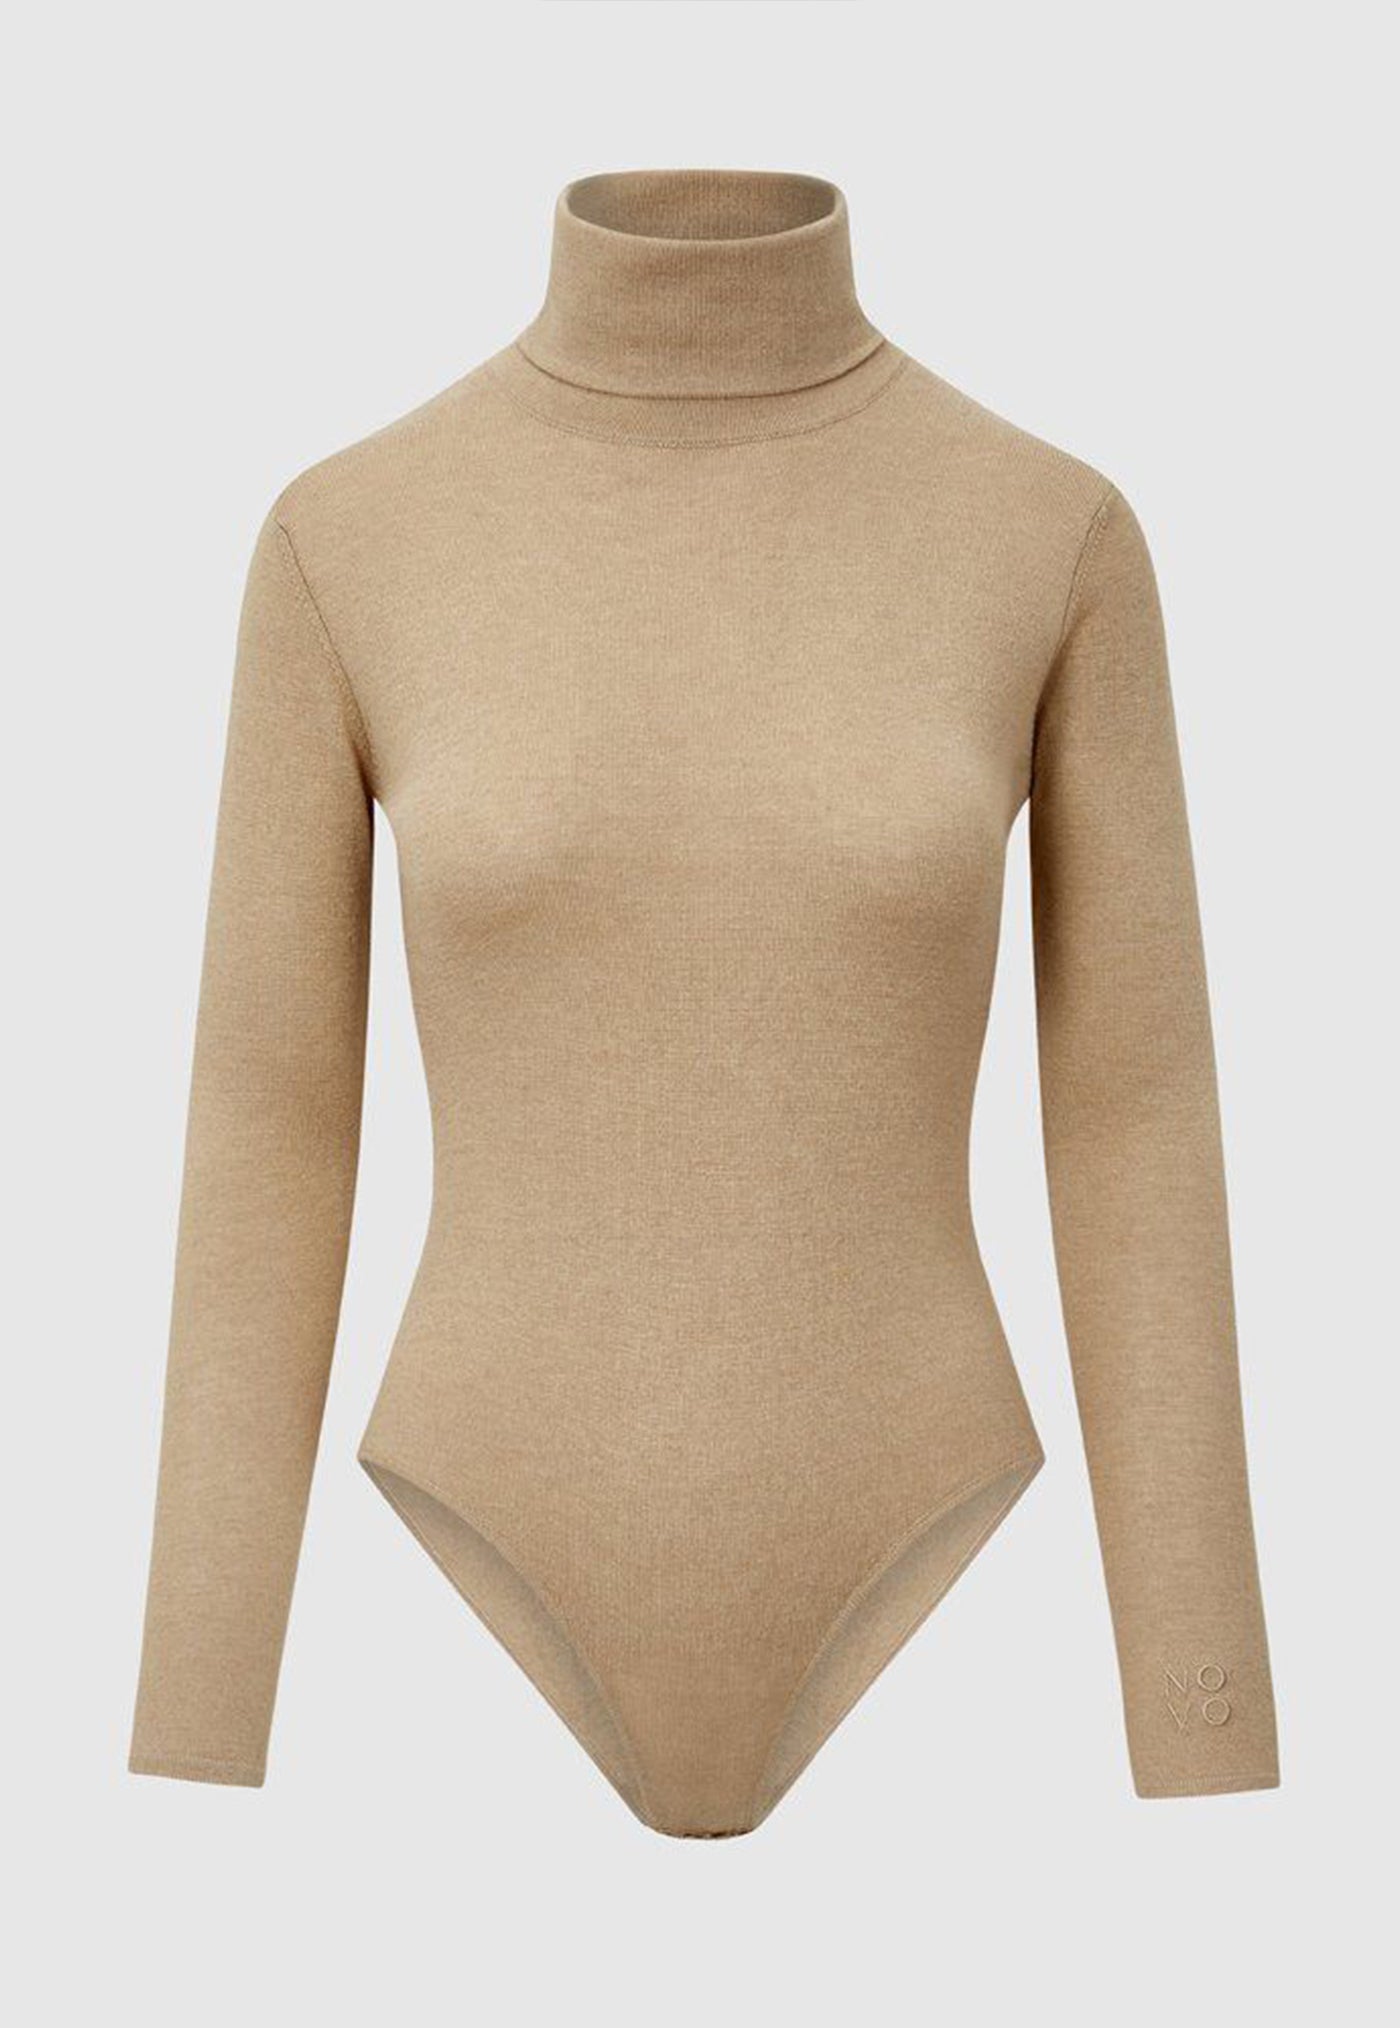 Silk Turtleneck Bodysuit - Camel sold by Angel Divine